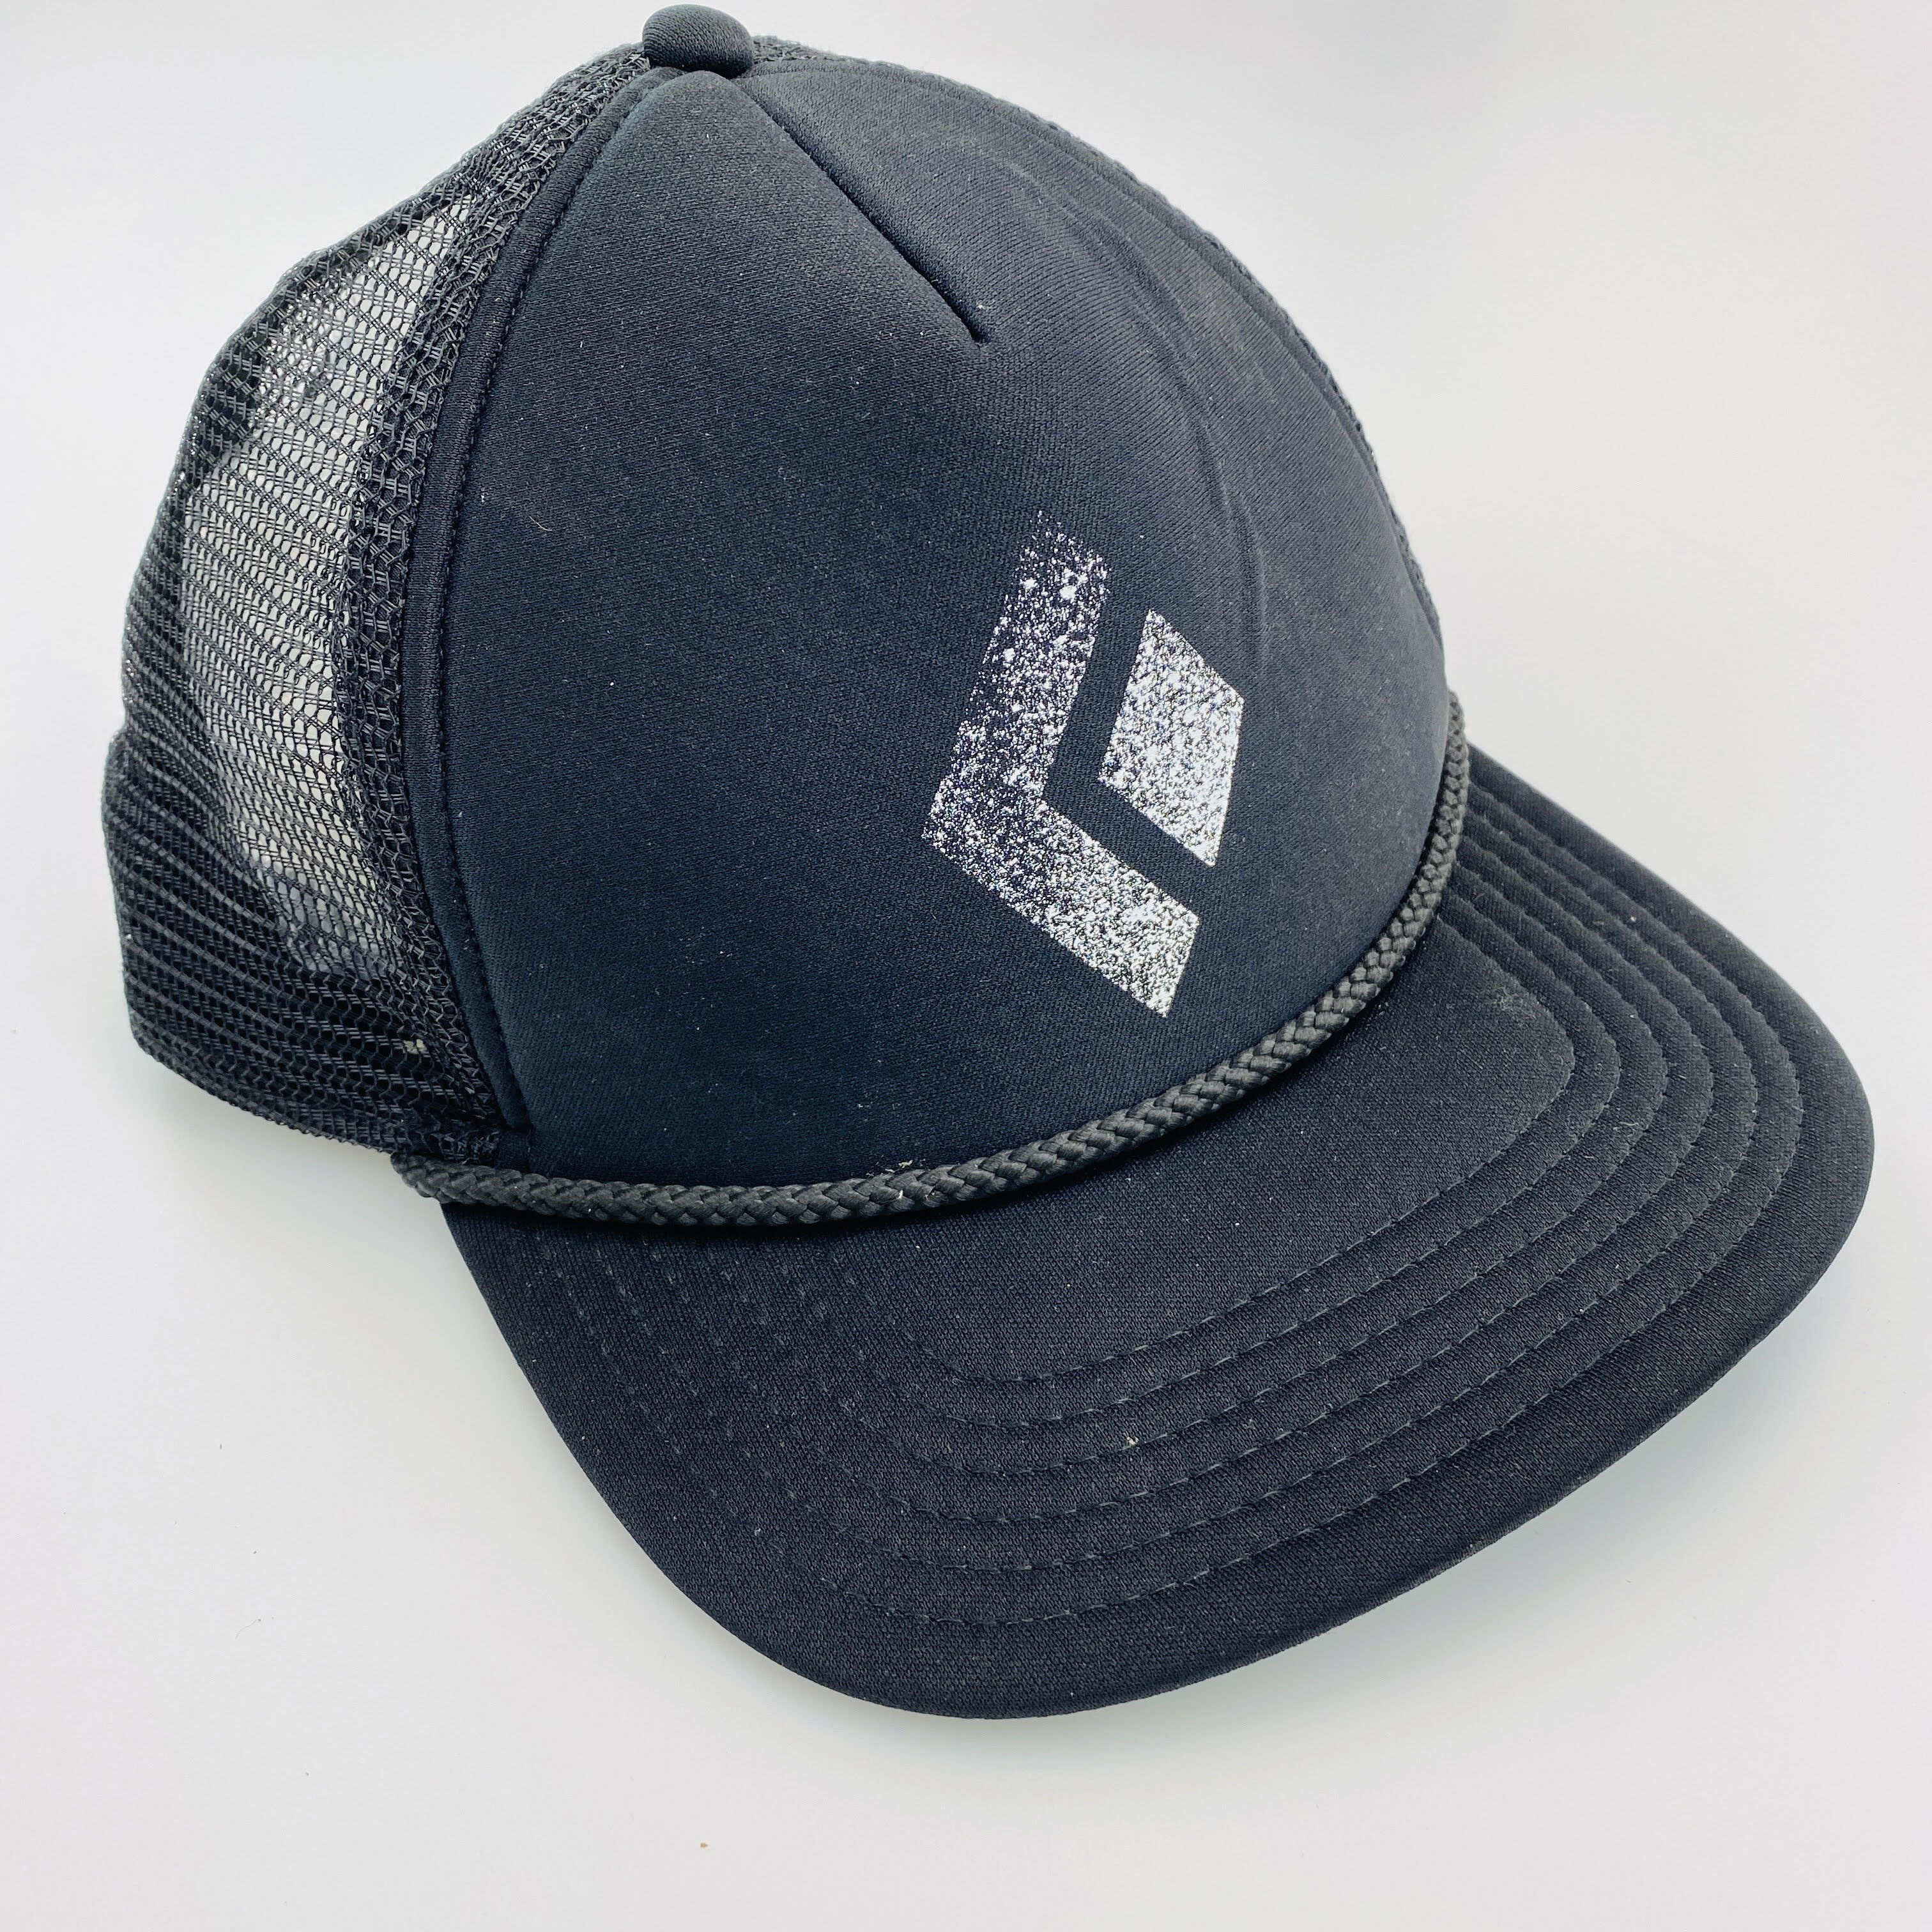 Black Diamond Flat Bill Trucker Hat - Segunda Mano Gorra - Hombre - Negro - Talla única | Hardloop